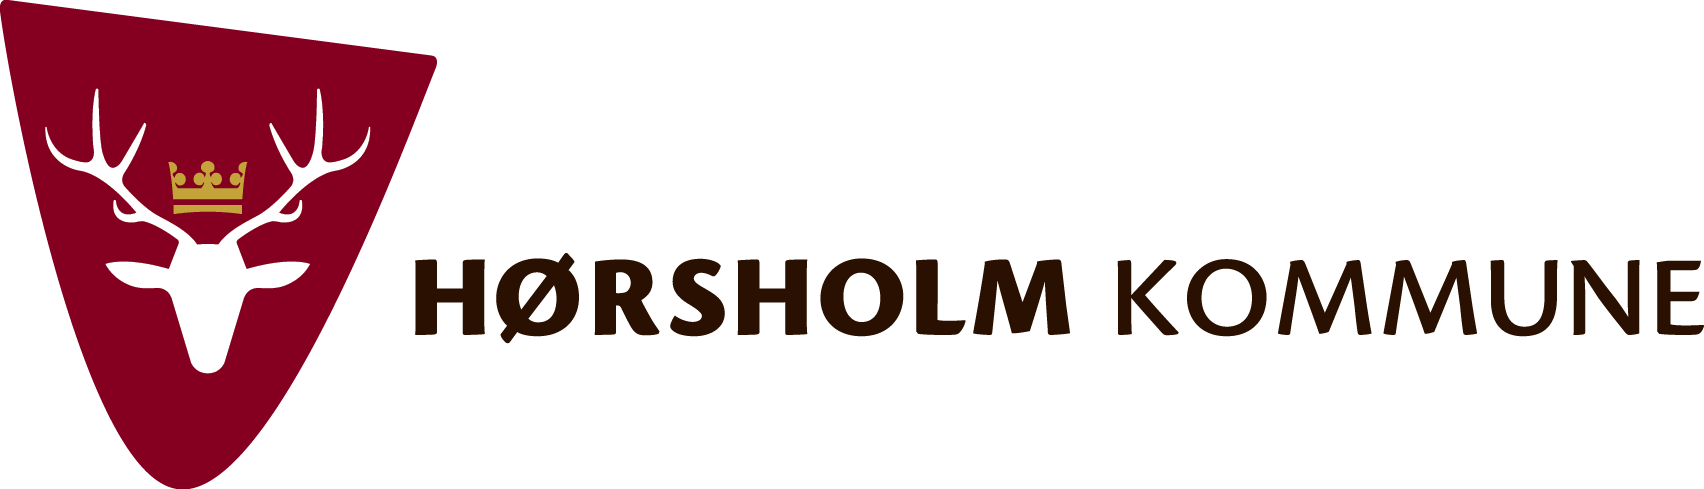 hrsholm-kommune-logo